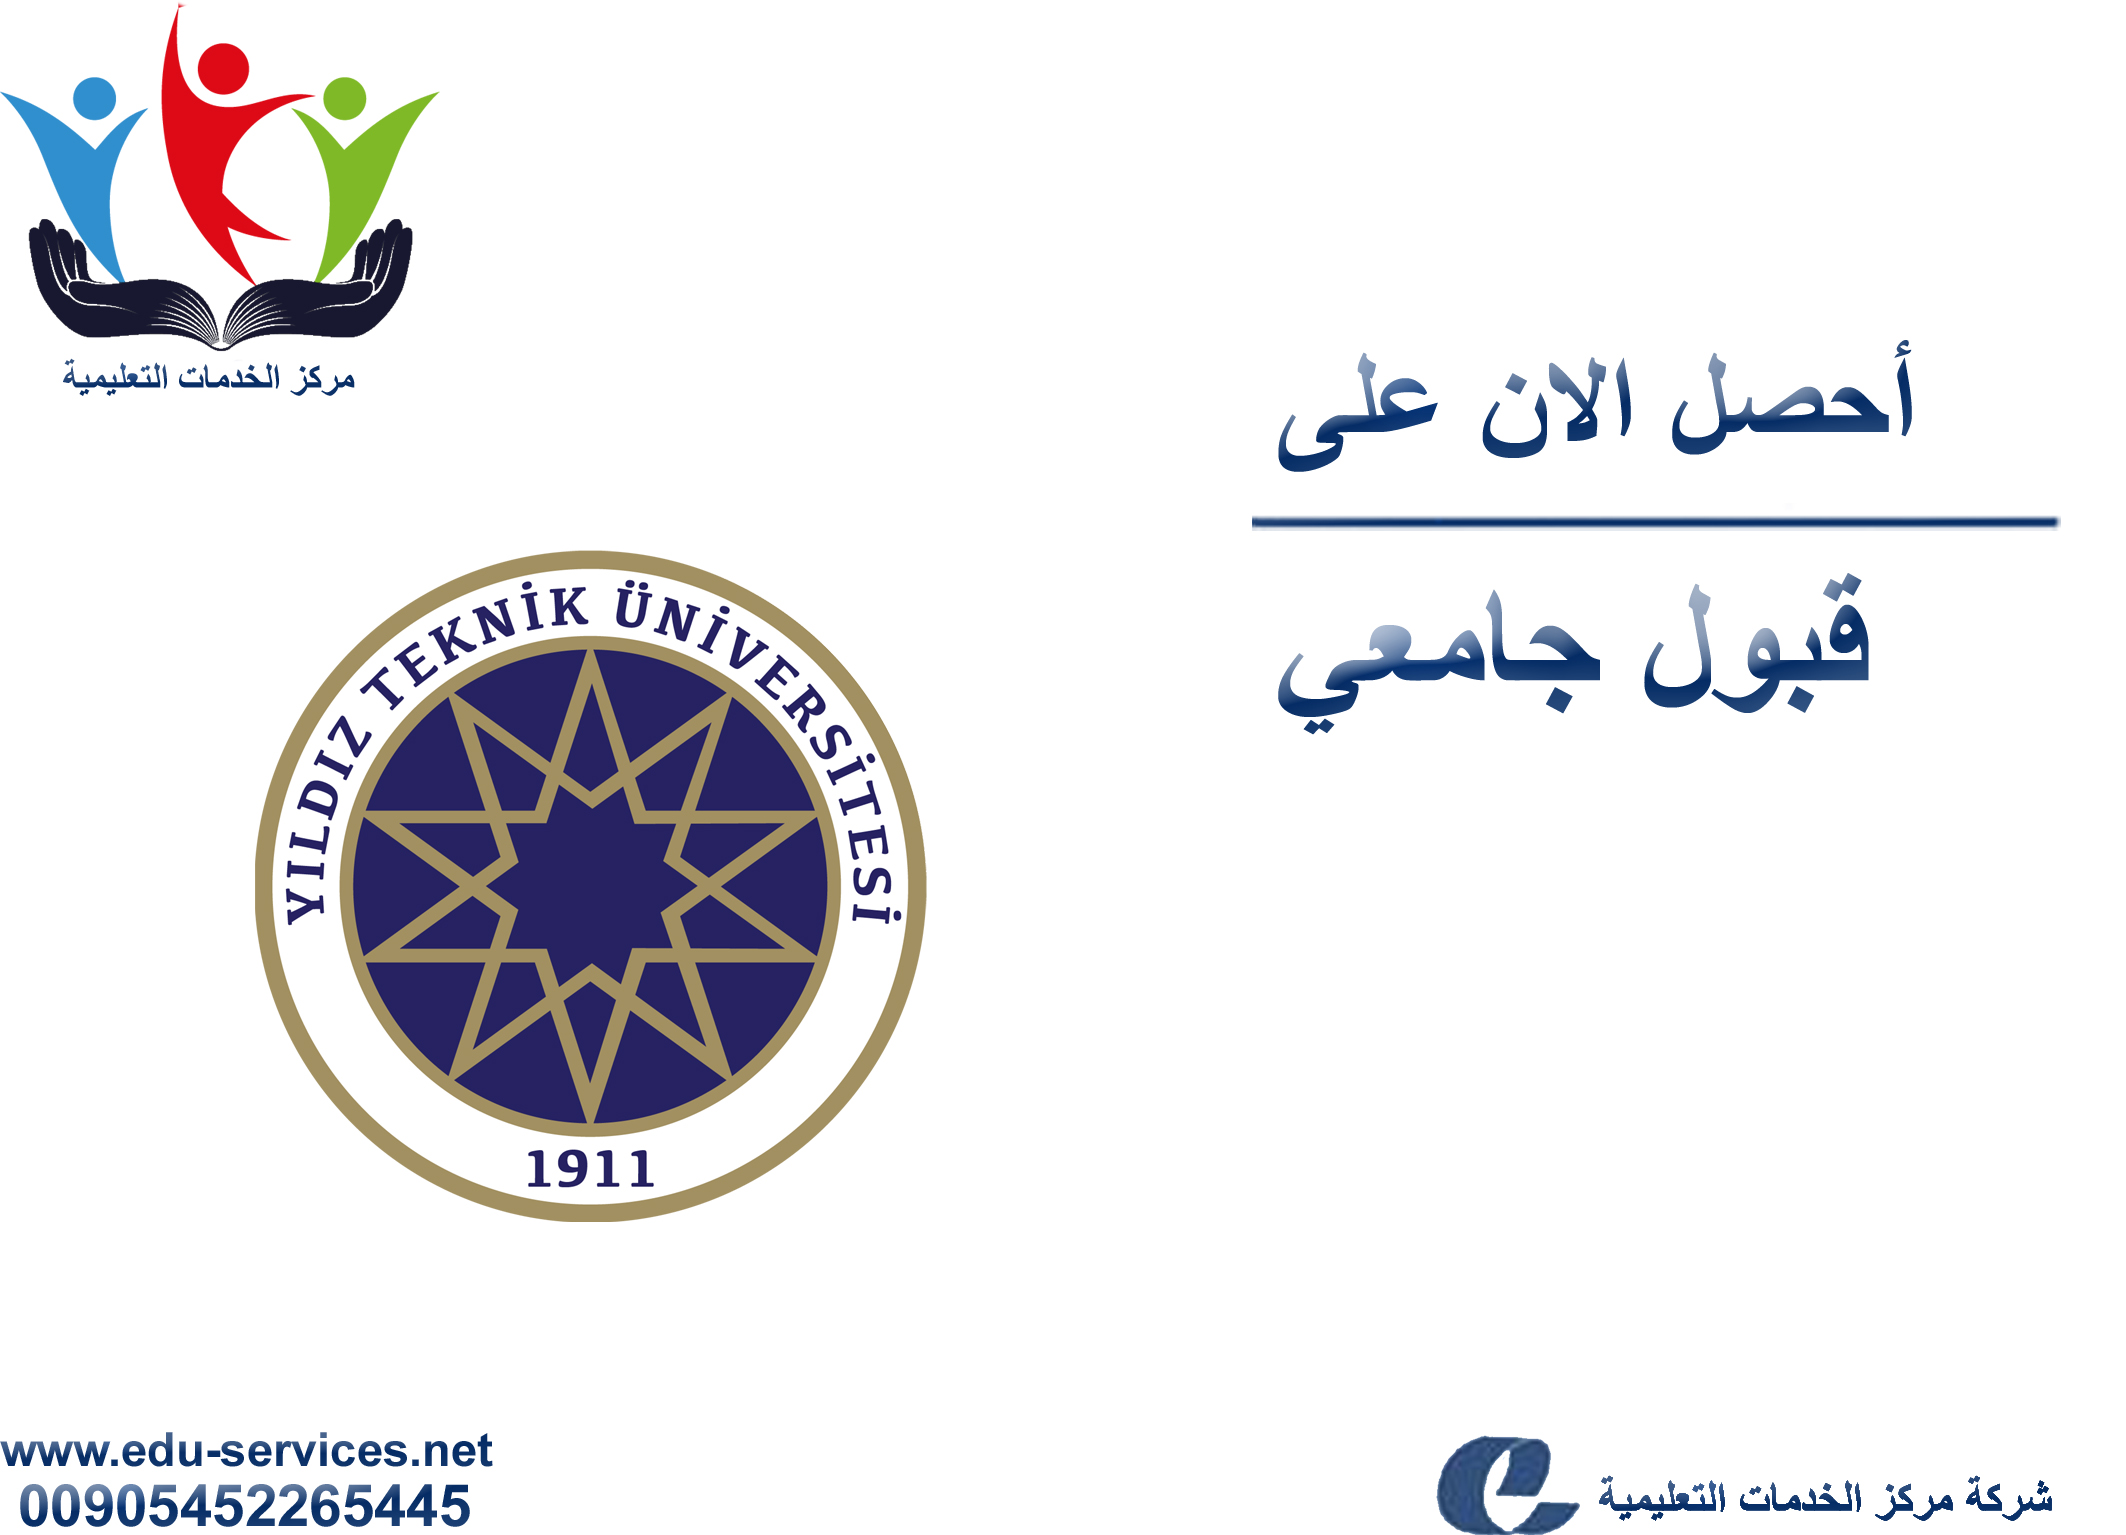 إعلان افتتاح التسجيل على جامعة يلدز تكنيك لبرنامج الدراسات العليا للعام 2018